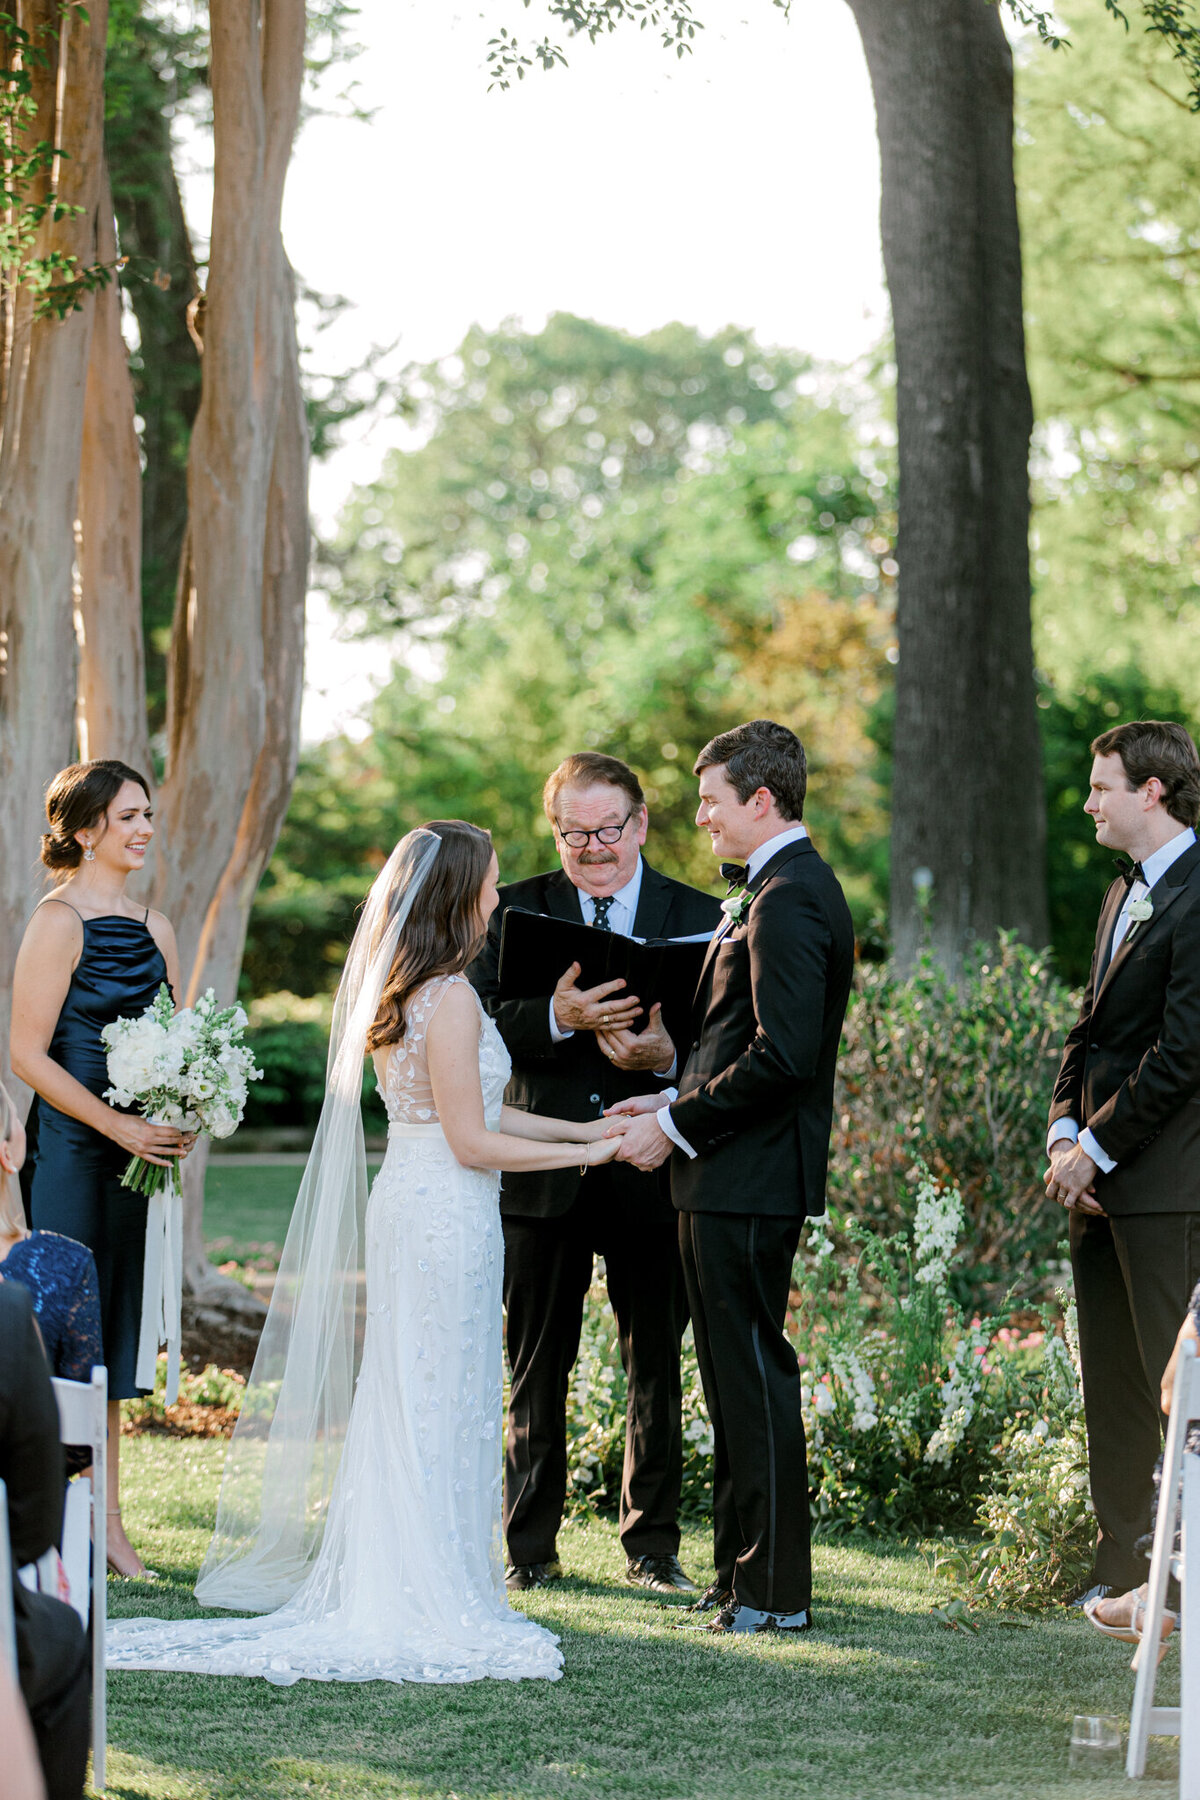 Gena & Matt's Wedding at the Dallas Arboretum | Dallas Wedding Photographer | Sami Kathryn Photography-156